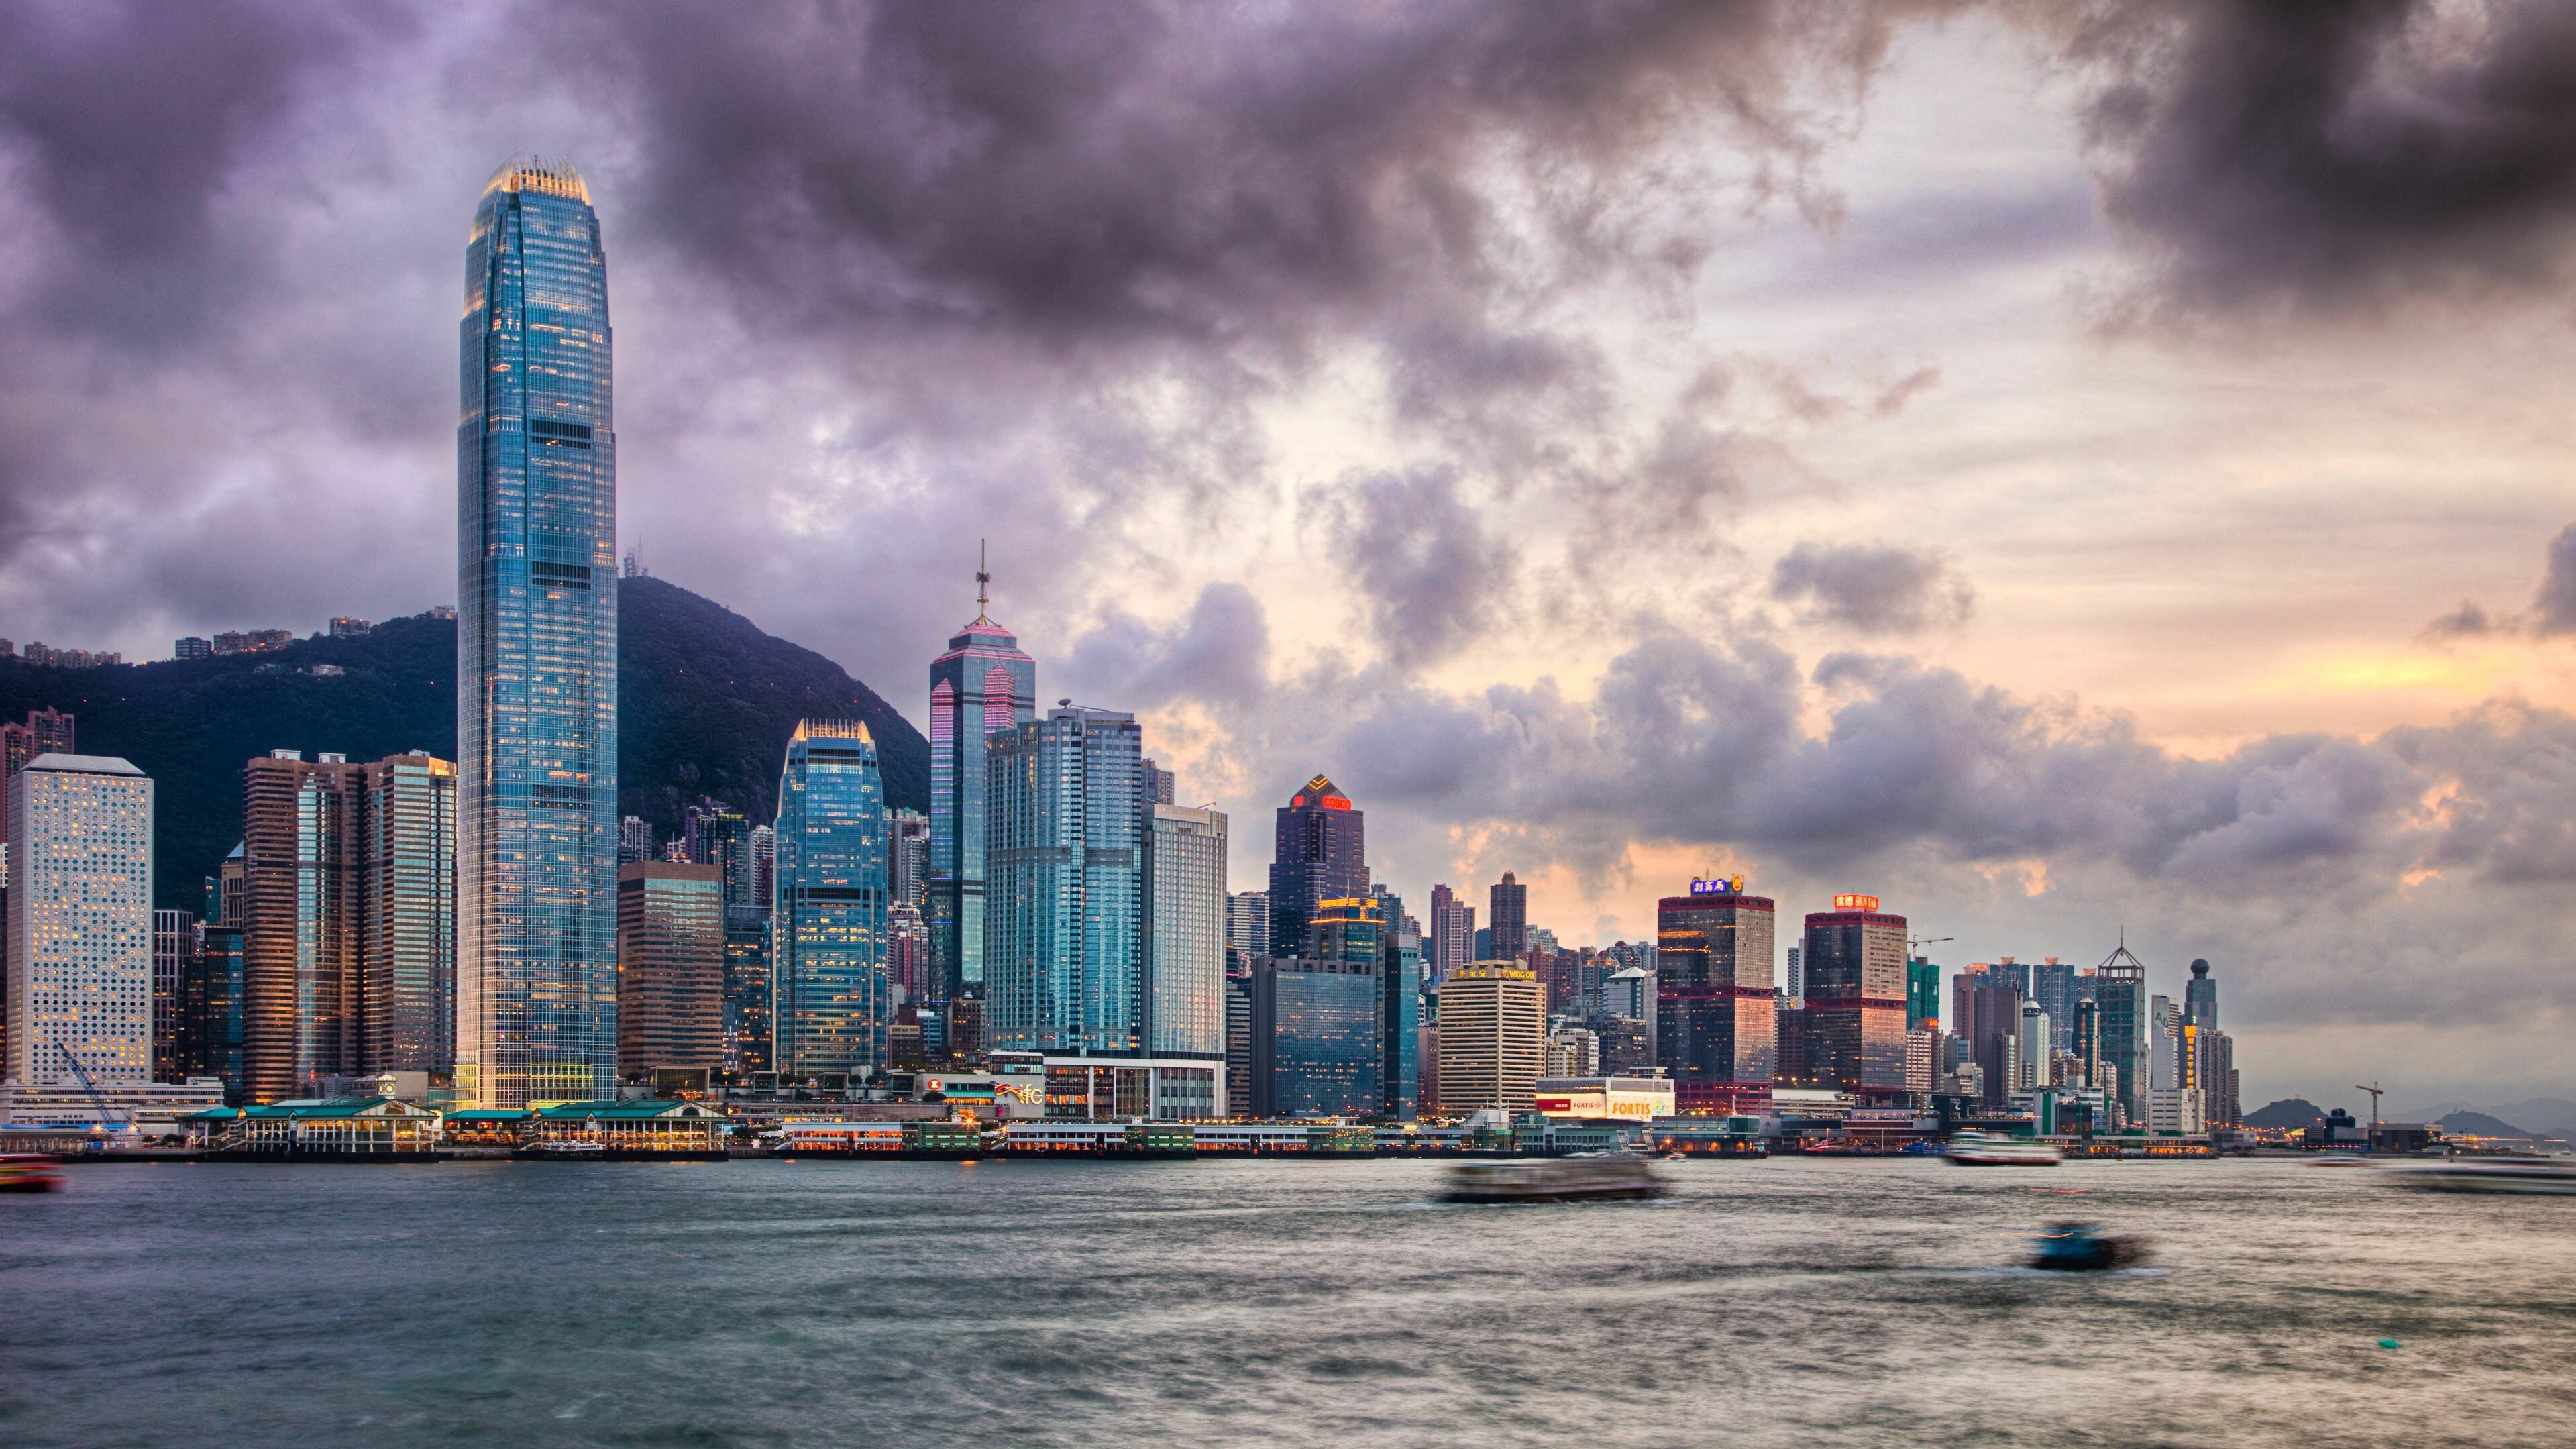 Hong Kong: Victoria, A natural landform harbor. 3840x2160 4K Wallpaper.